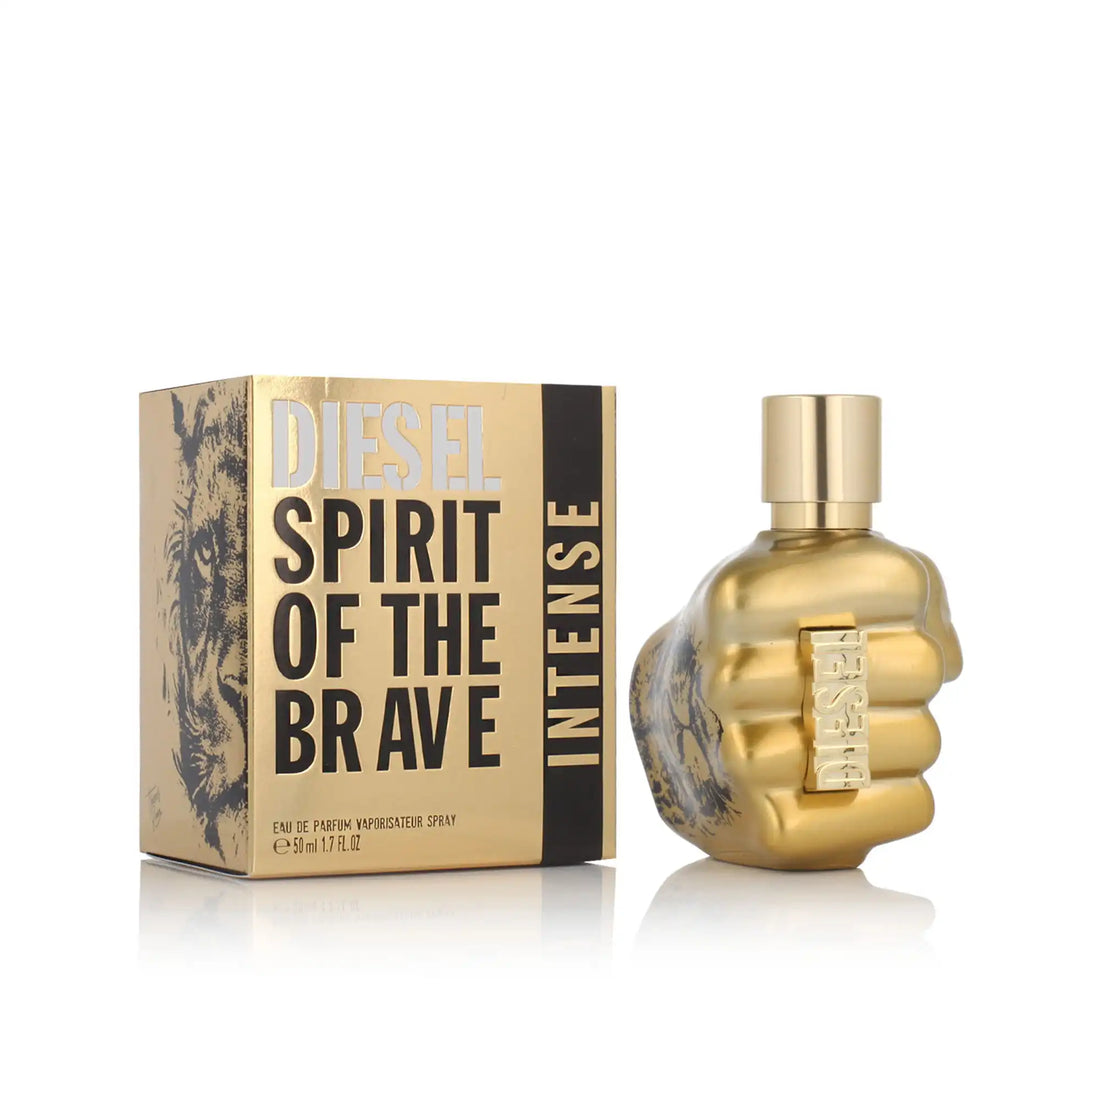 Diesel Spirit Of The Brave Intense Eau de Parfum 50ml Packaging